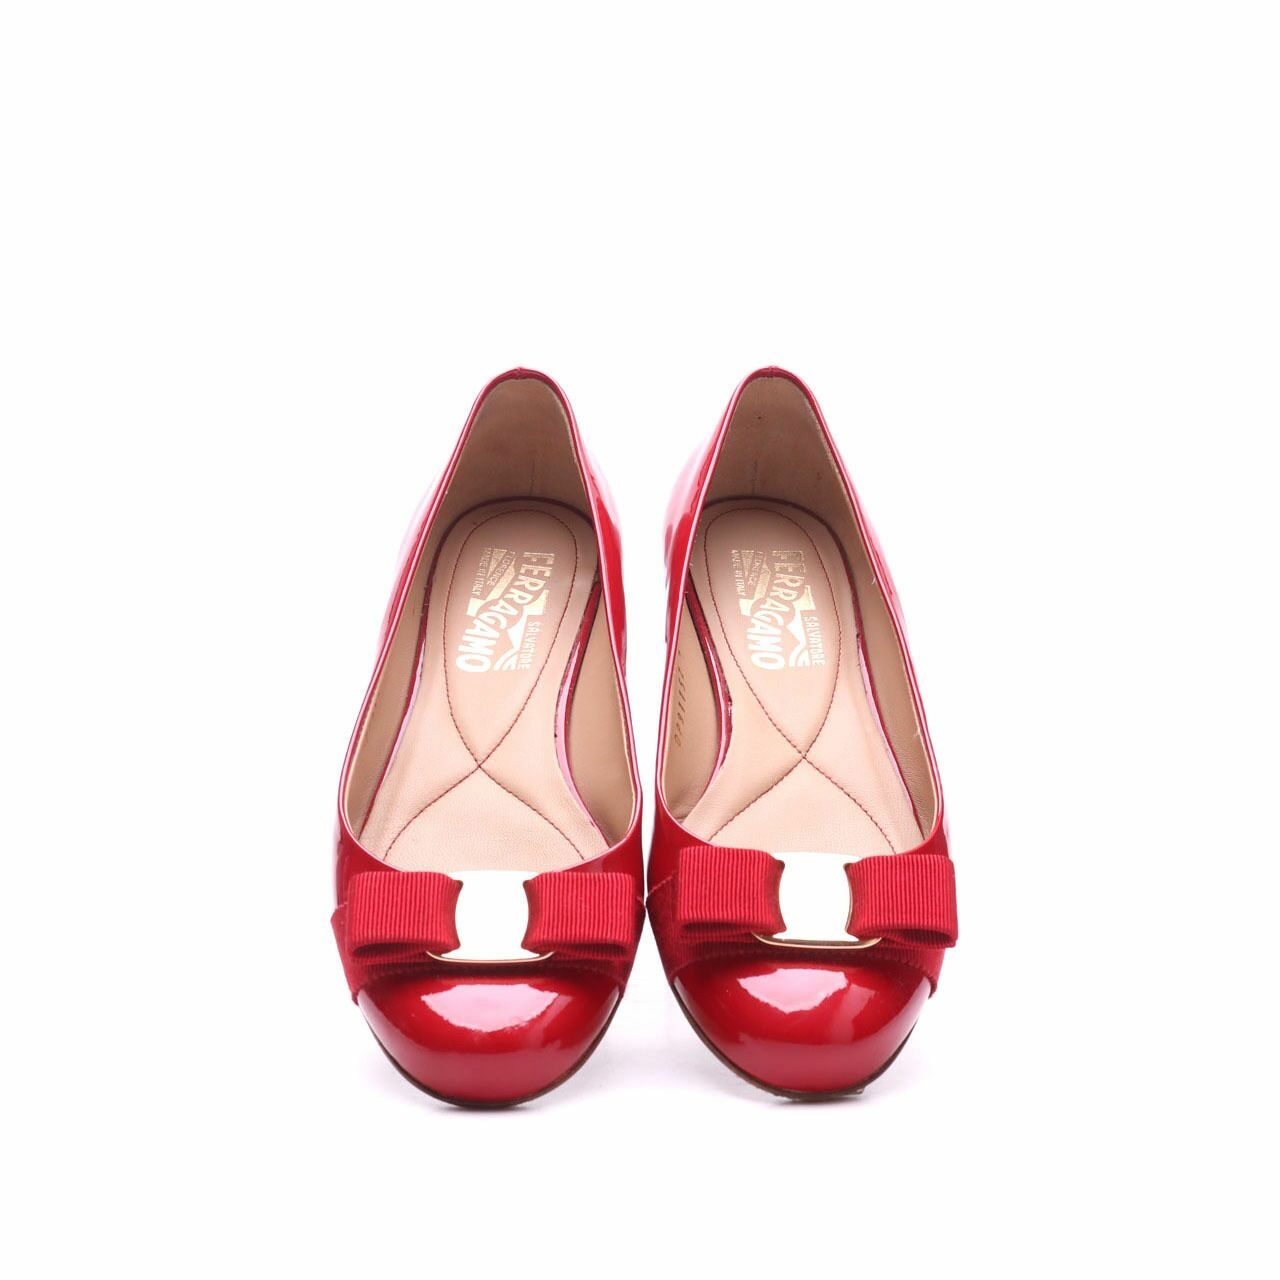  Salvatore Ferragamo Red Varina Flats Shoes